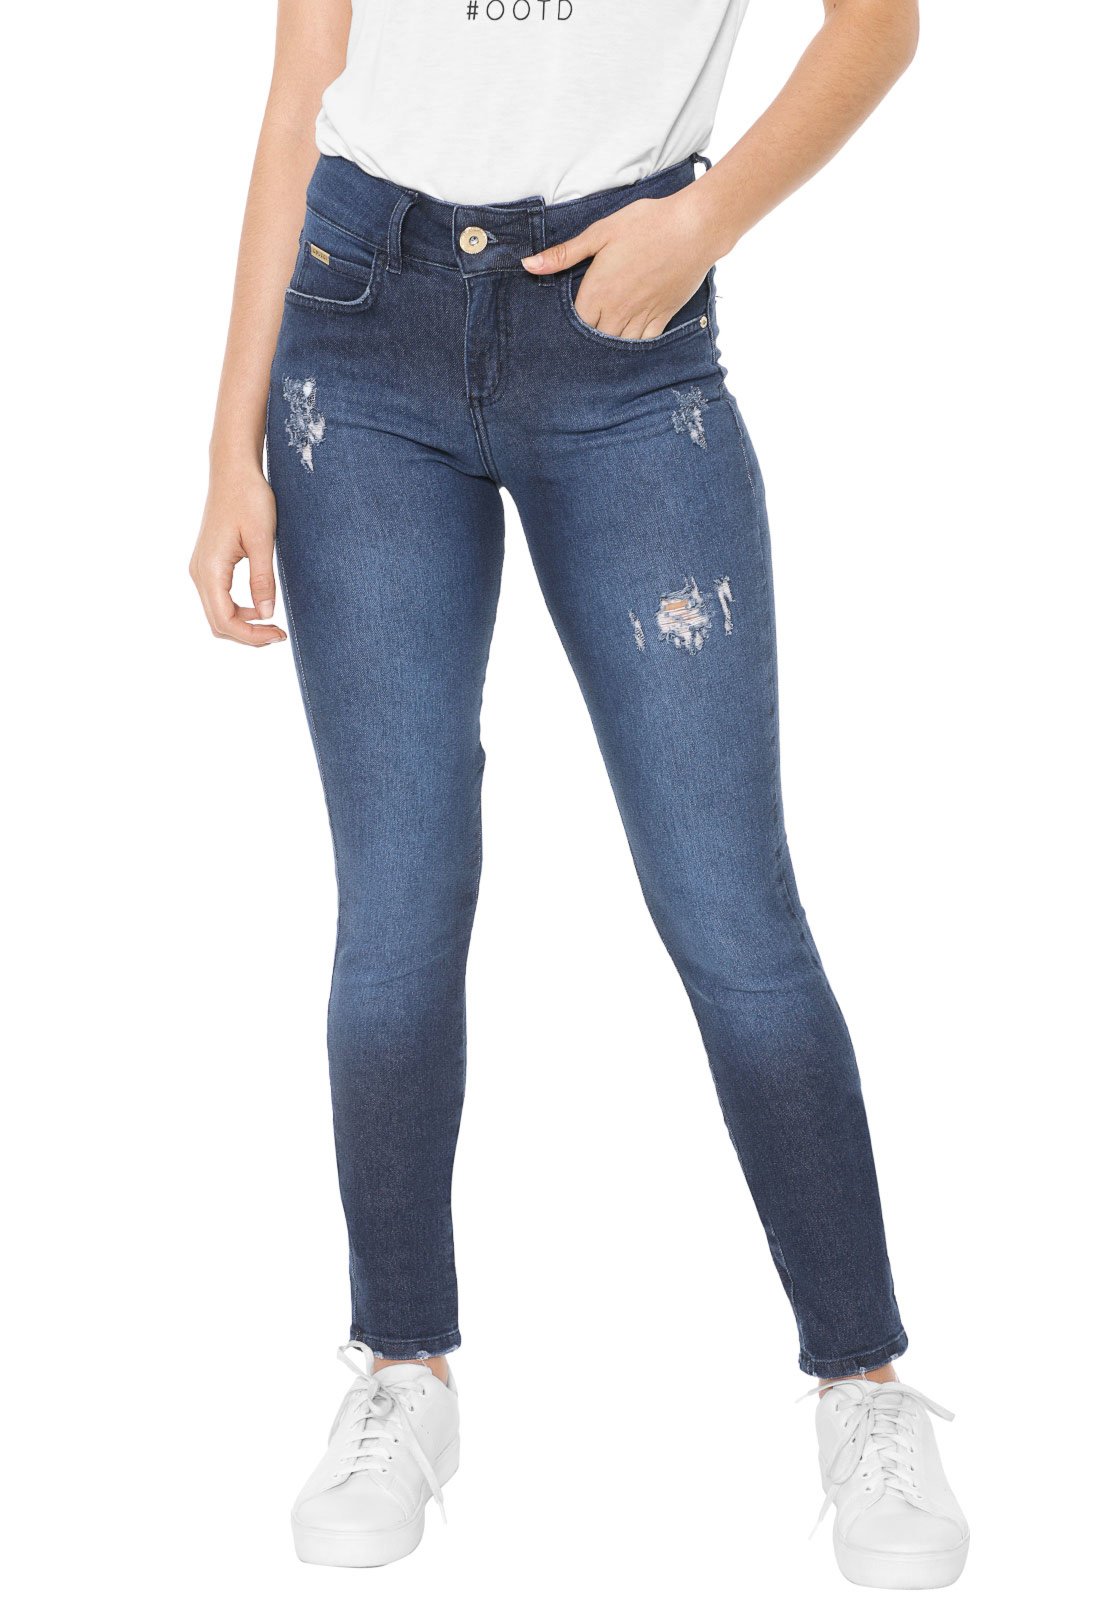 calça jeans feminina colcci dafiti